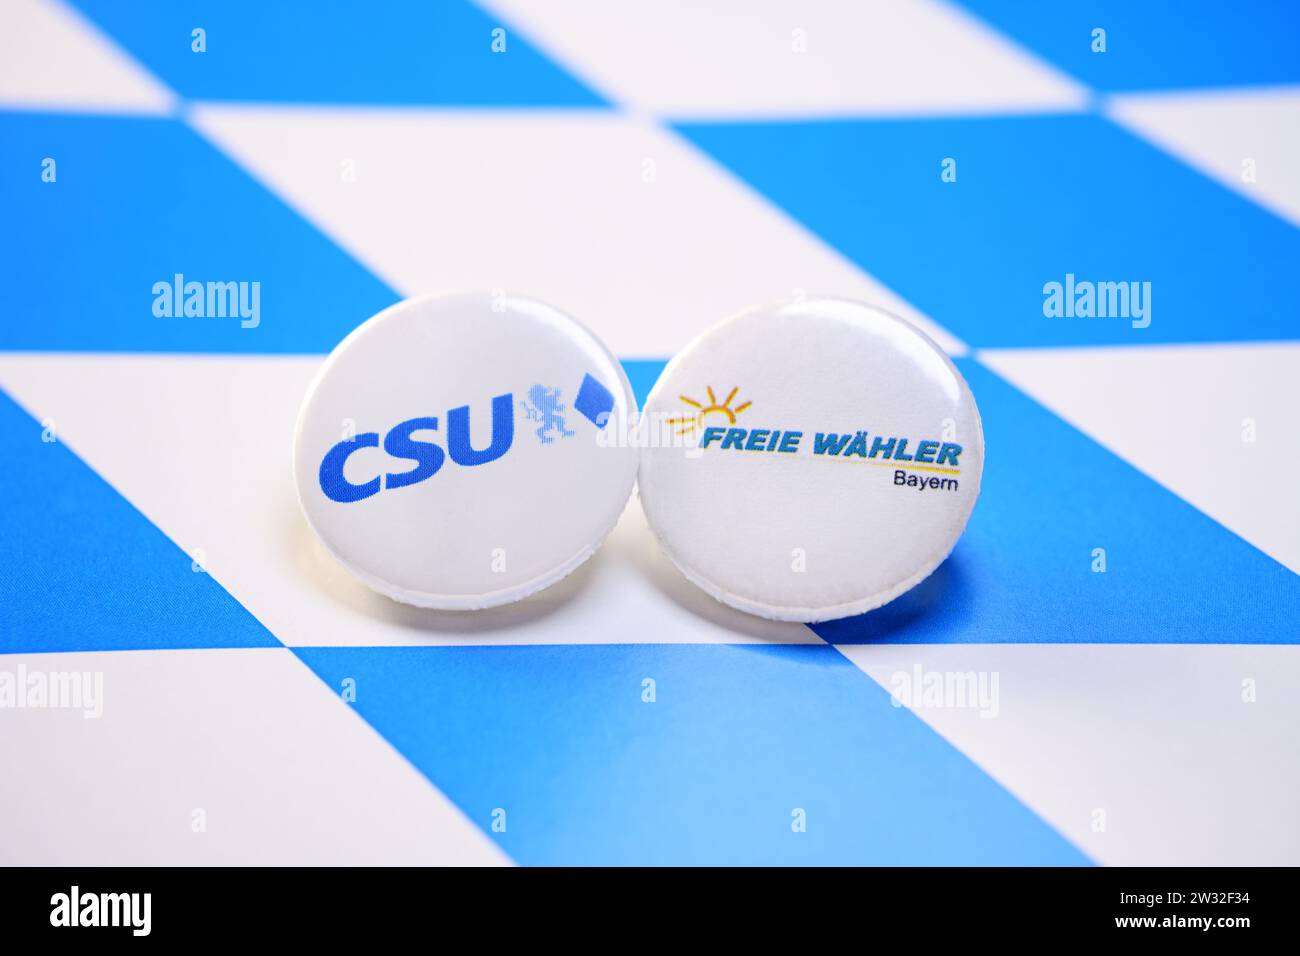 Parteianstecker von CSU und Freie Wähler Bayern auf dem Wappen von Bayern, Symbolfoto Landtagswahl Stock Photo